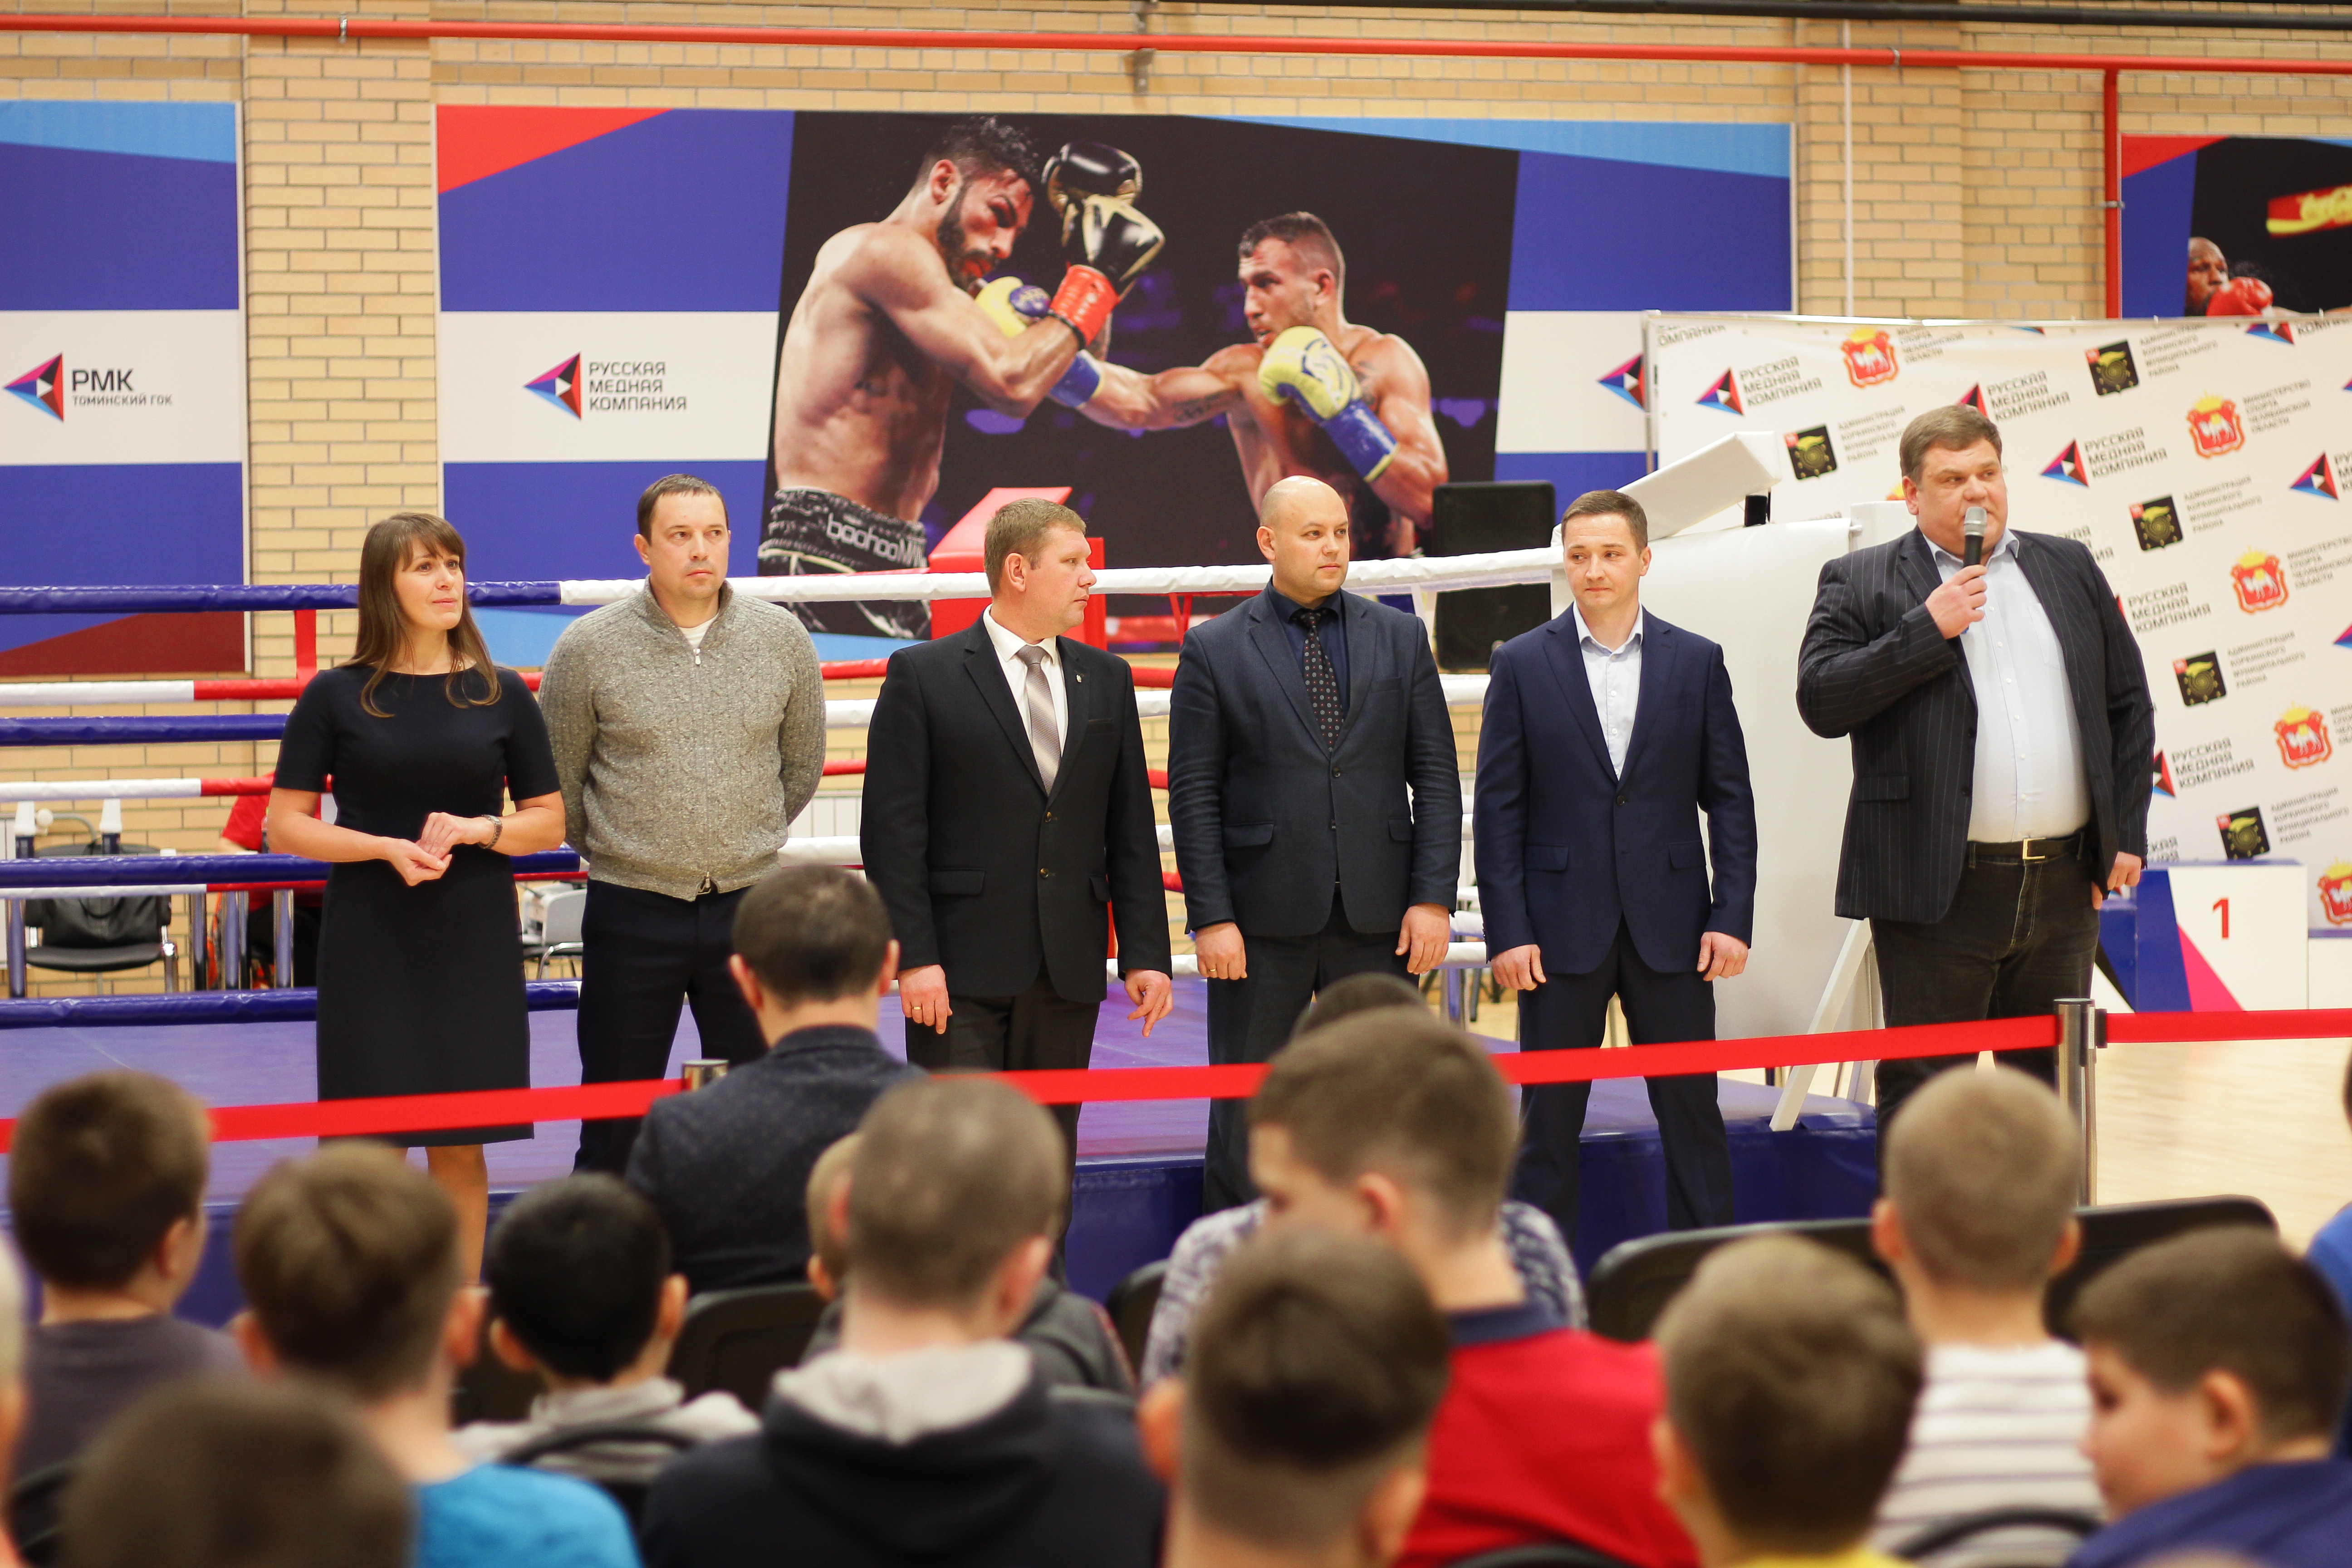 Более 150 юных боксёров из двенадцати городов сражаются за Кубок Русской медной компании